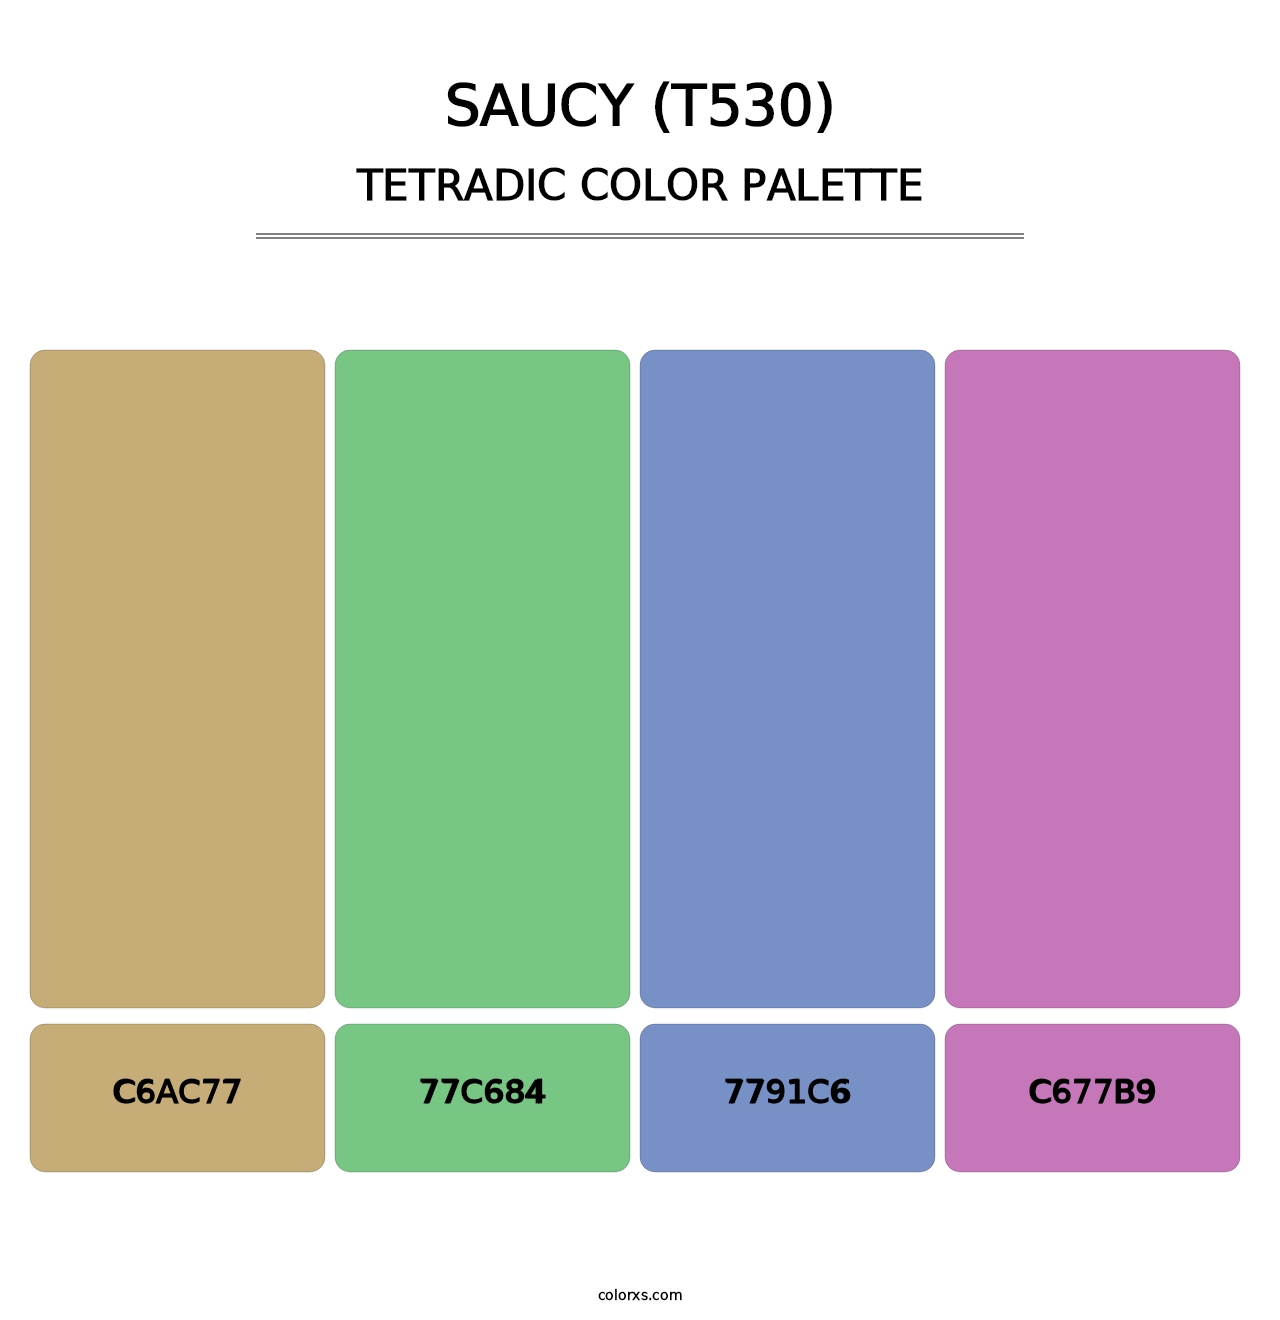 Saucy (T530) - Tetradic Color Palette